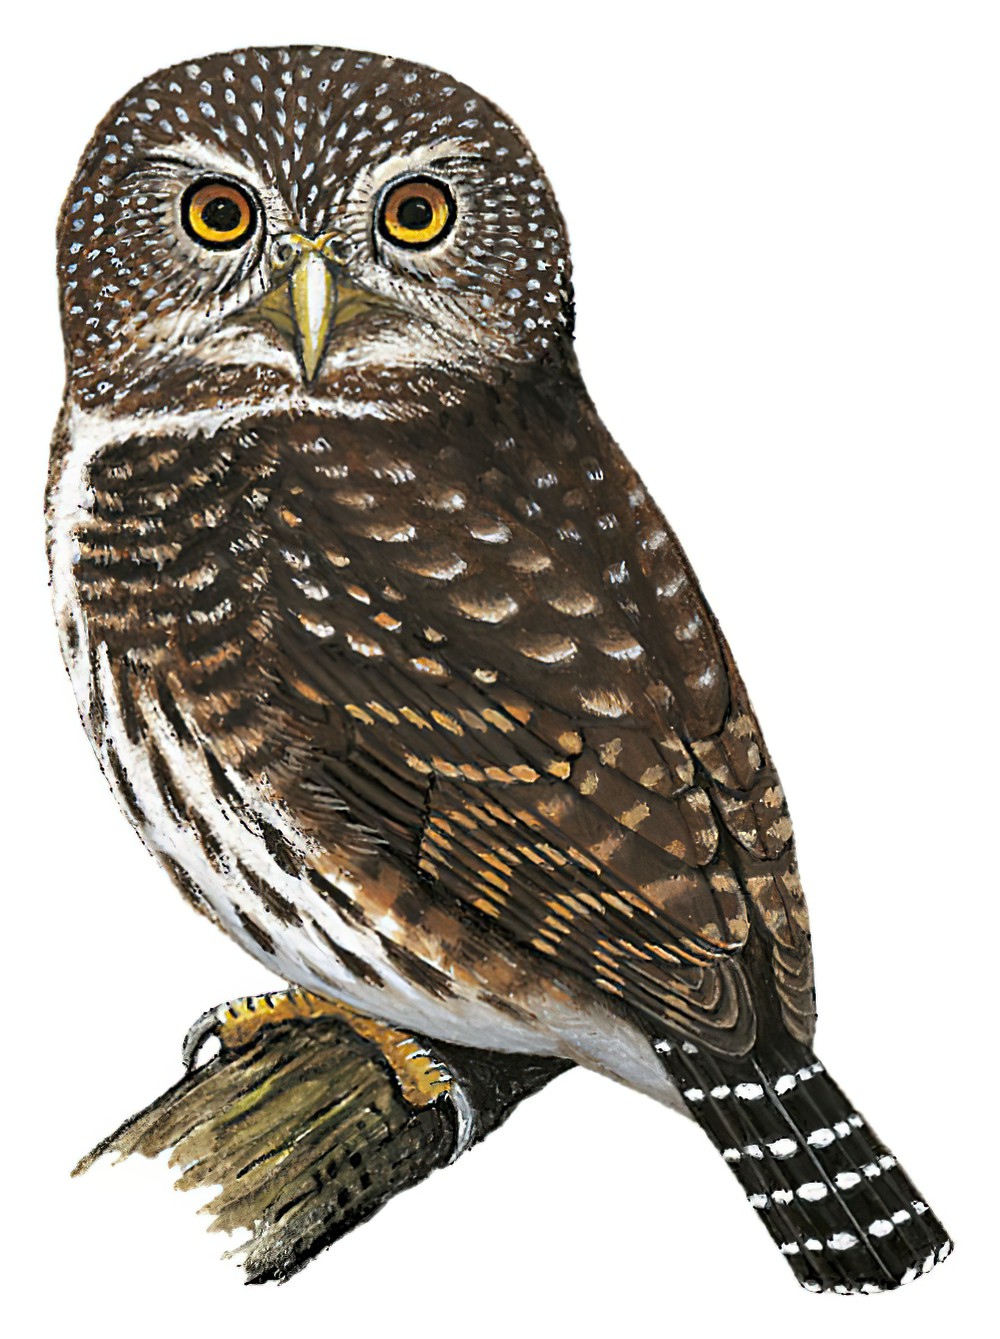 Yungas Pygmy-Owl / Glaucidium bolivianum